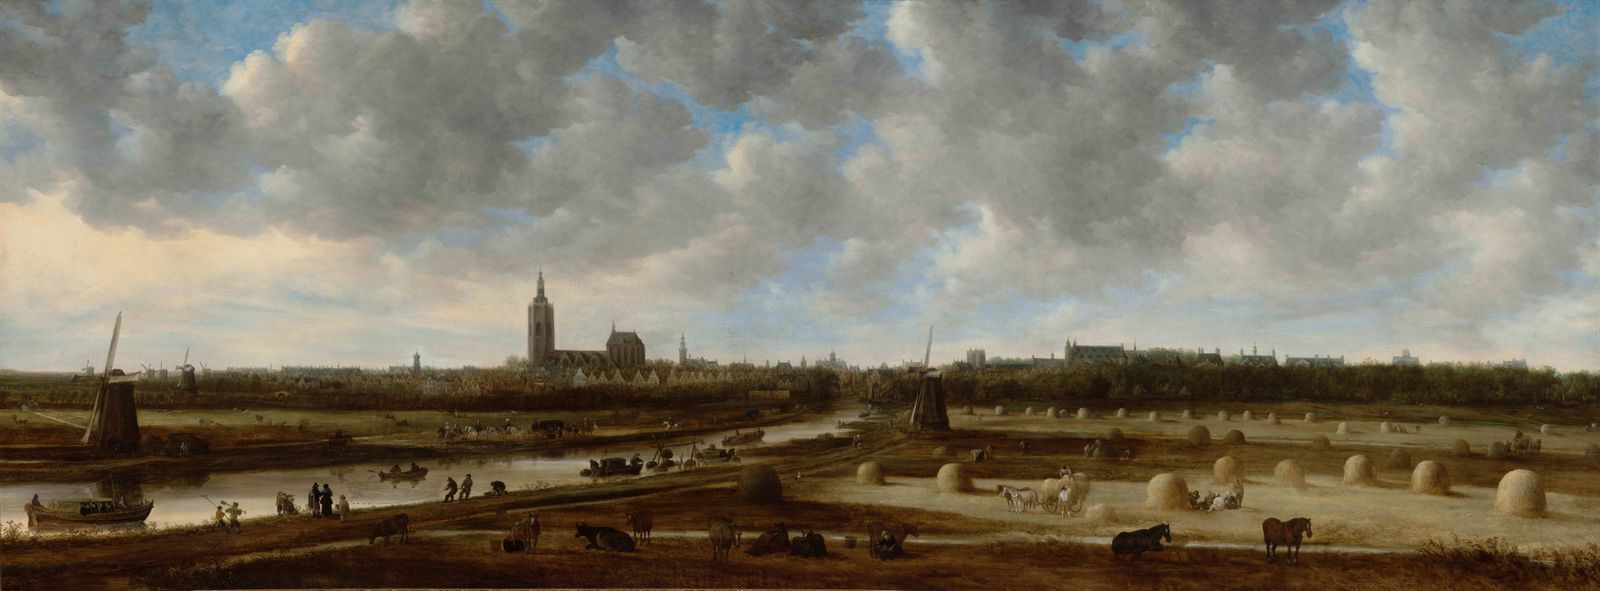 Door de ogen van Jan van Goyen: de reis naar Den Haag in de 17de eeuw